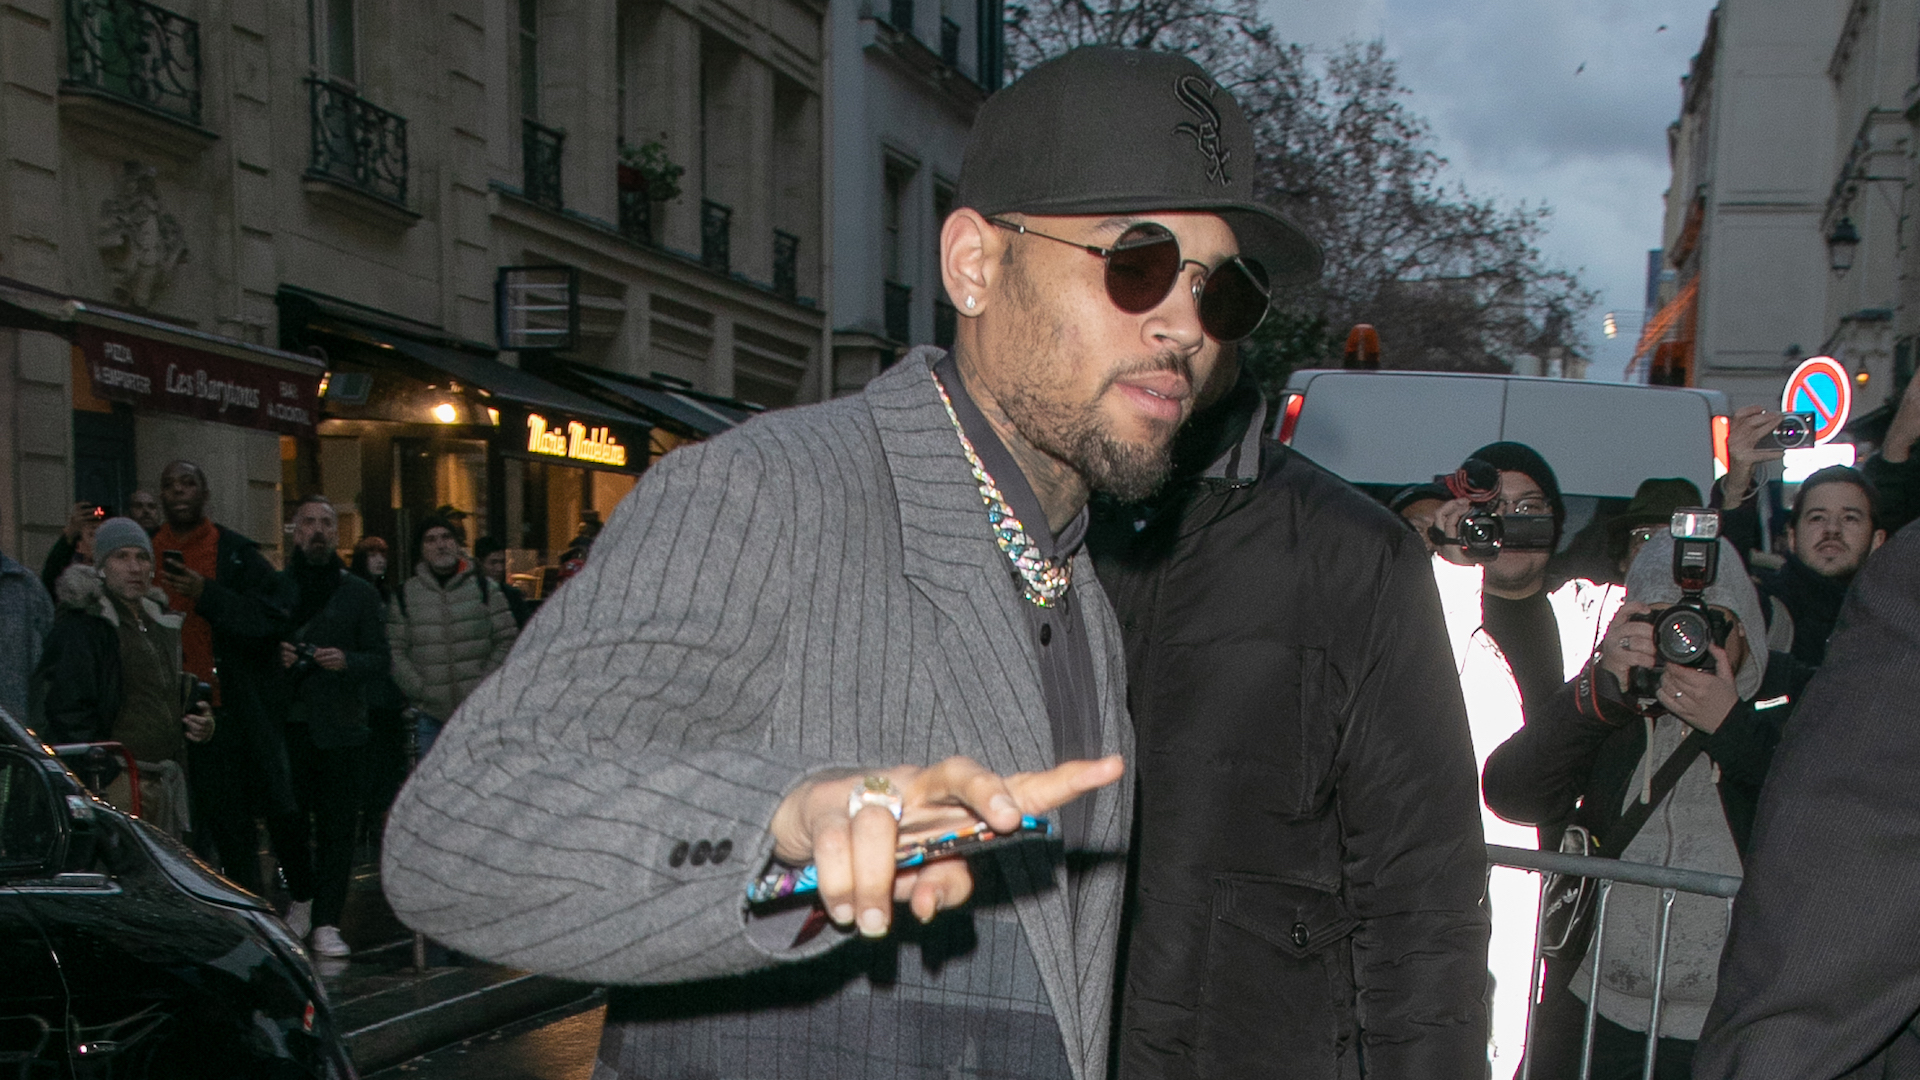 Chris Brown convoqué à Paris : celle qui l'accuse de viol souhaite l'affronter "les yeux dans les yeux"